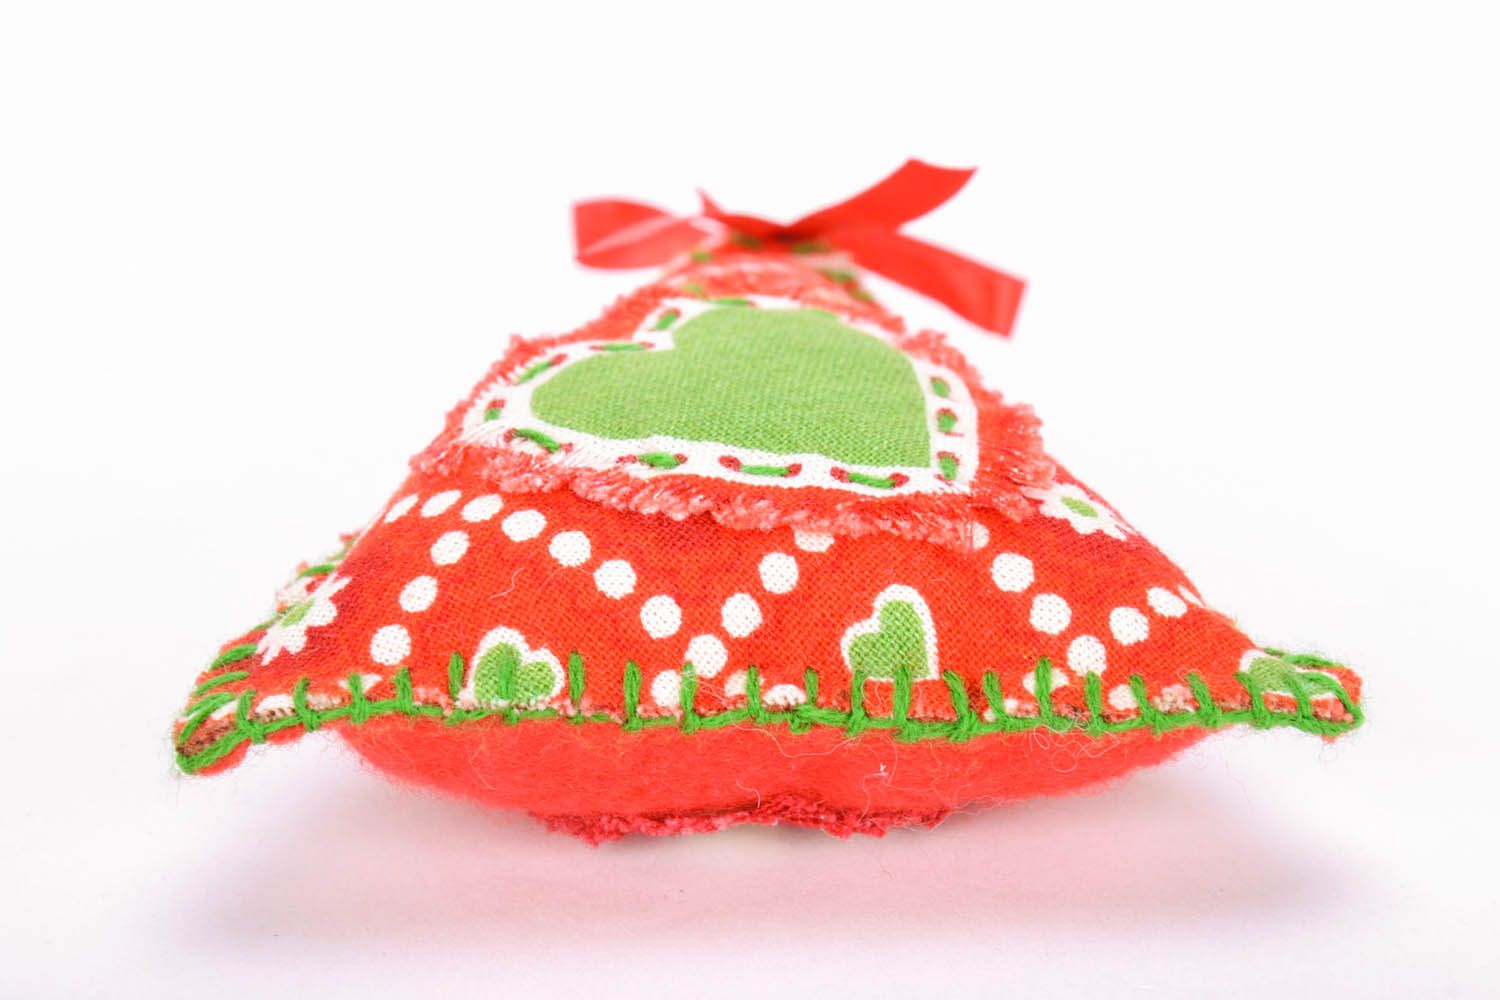 Brinquedo da árvore de Natal costurado de fleece feito em tons vermelhos e verdes foto 4